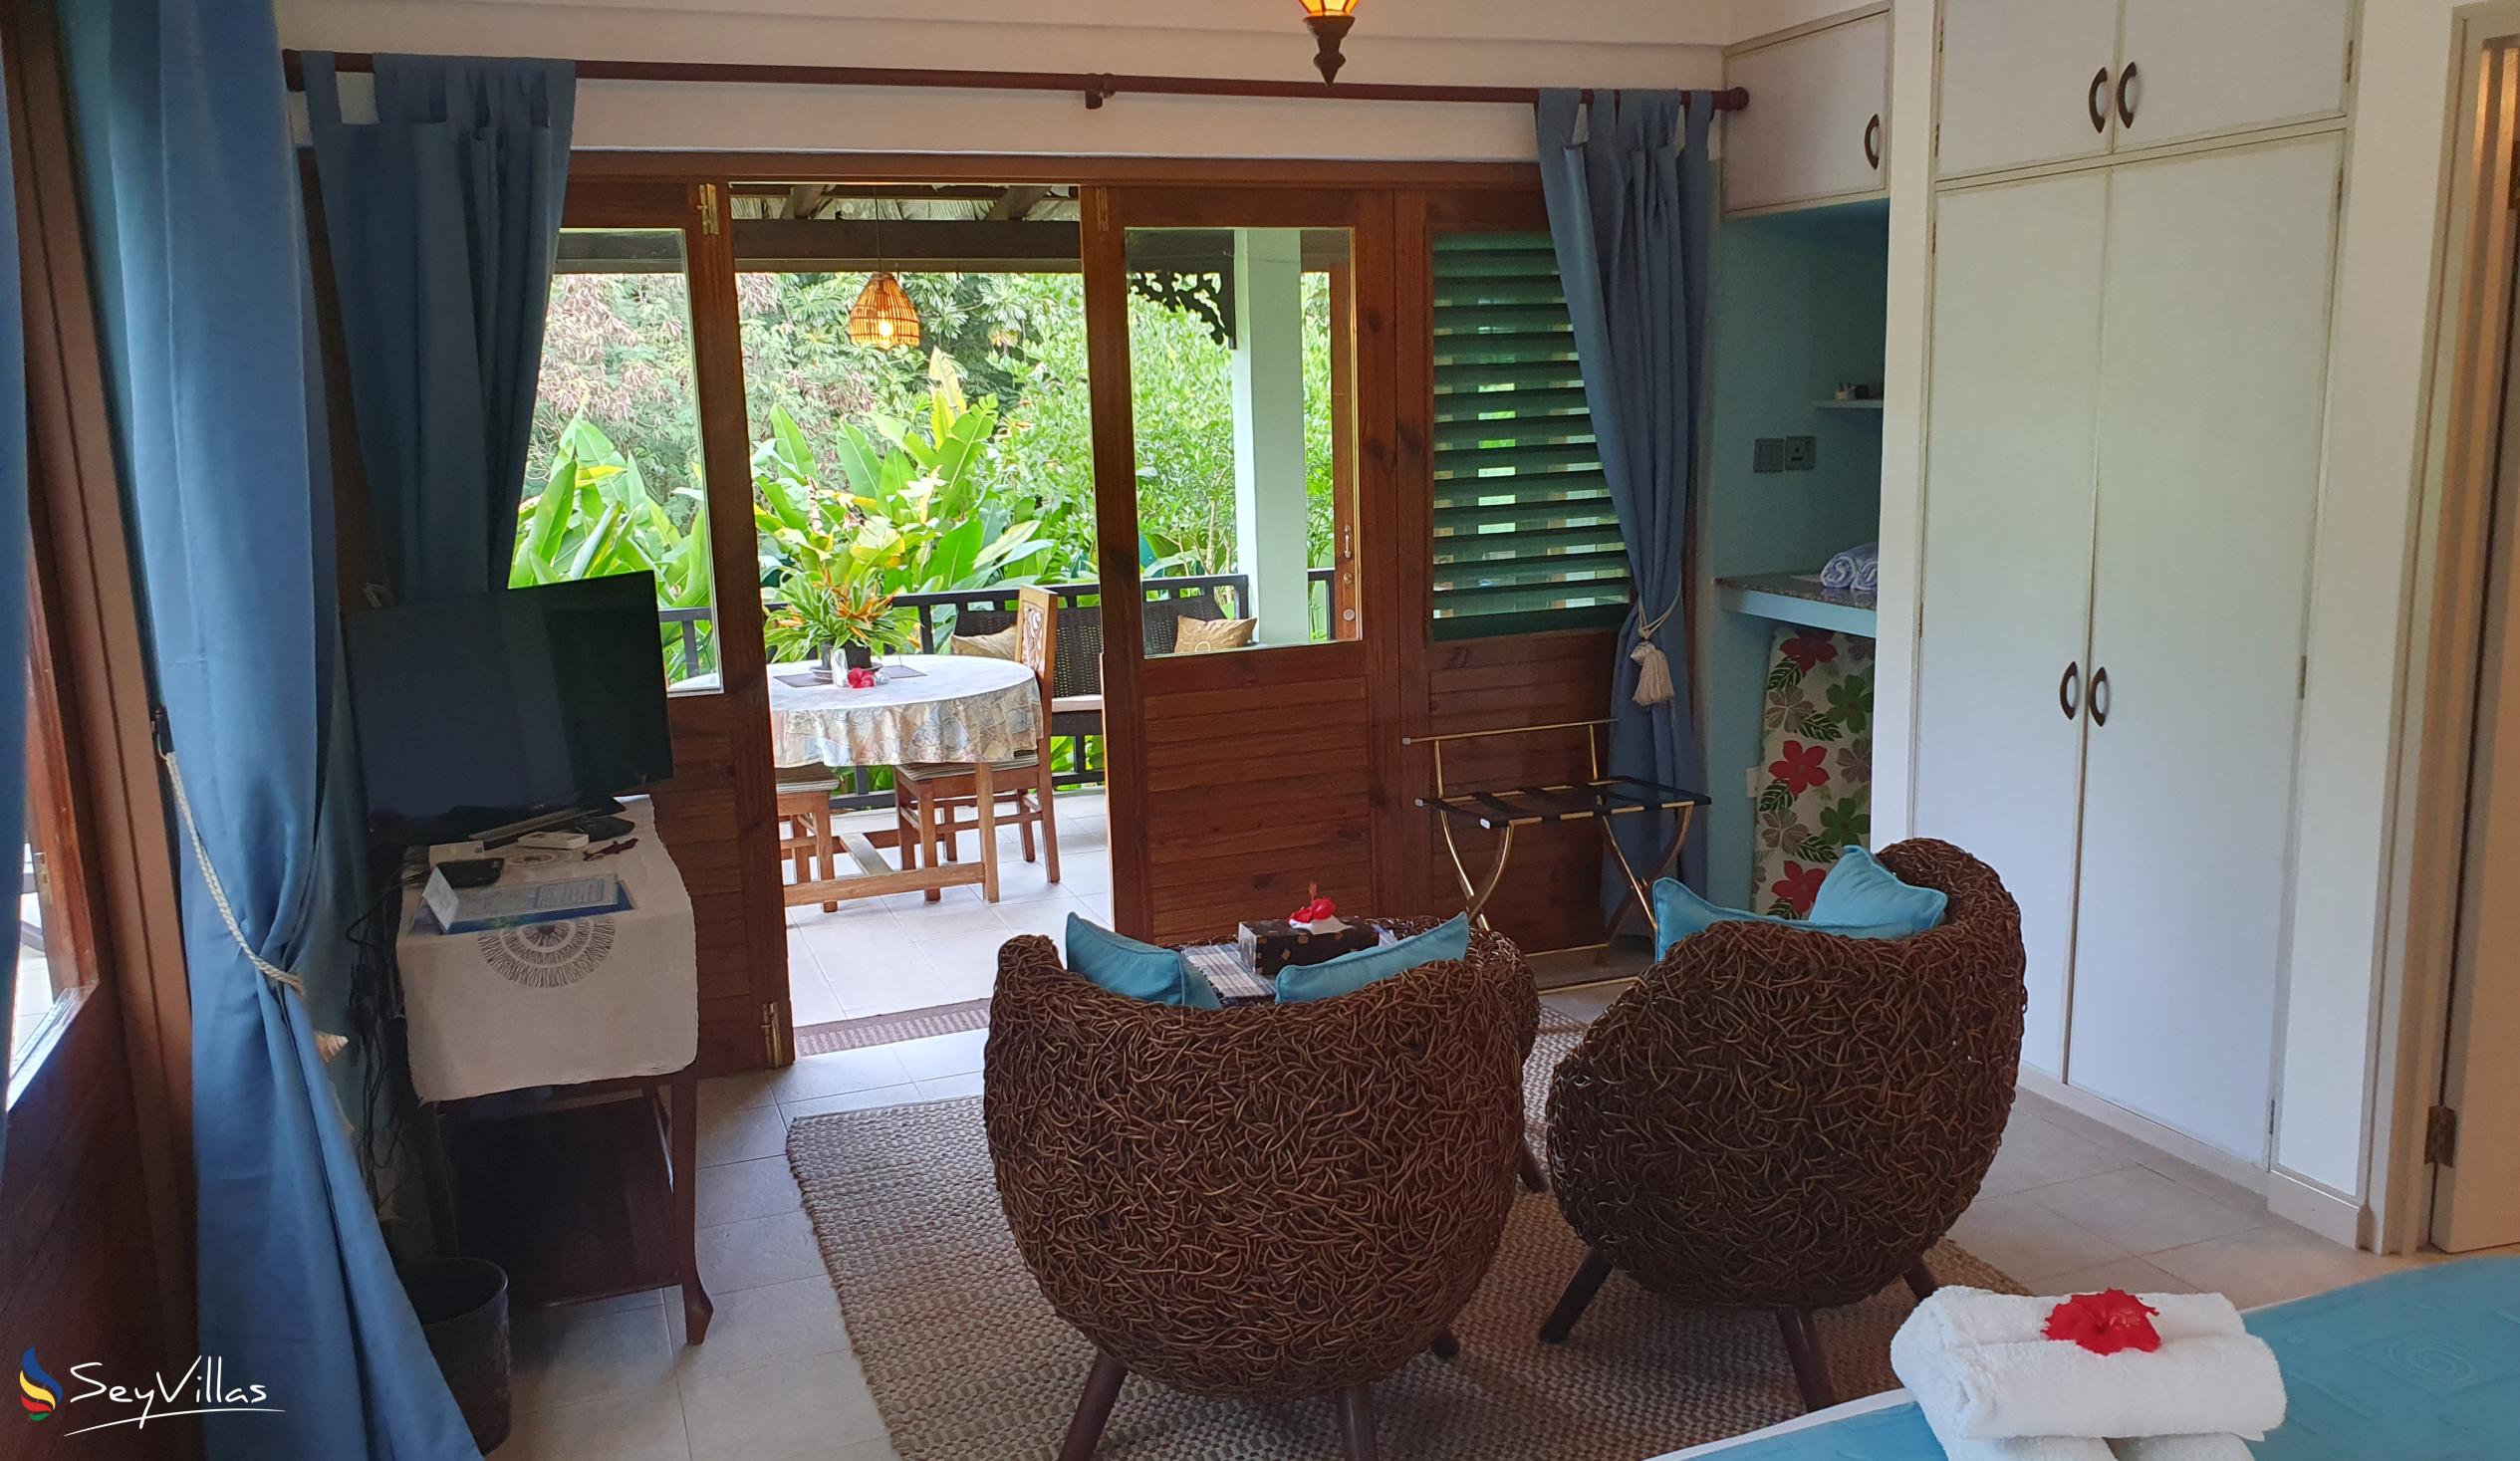 Foto 125: Maison Soleil - Jasmine Suite - Mahé (Seychelles)